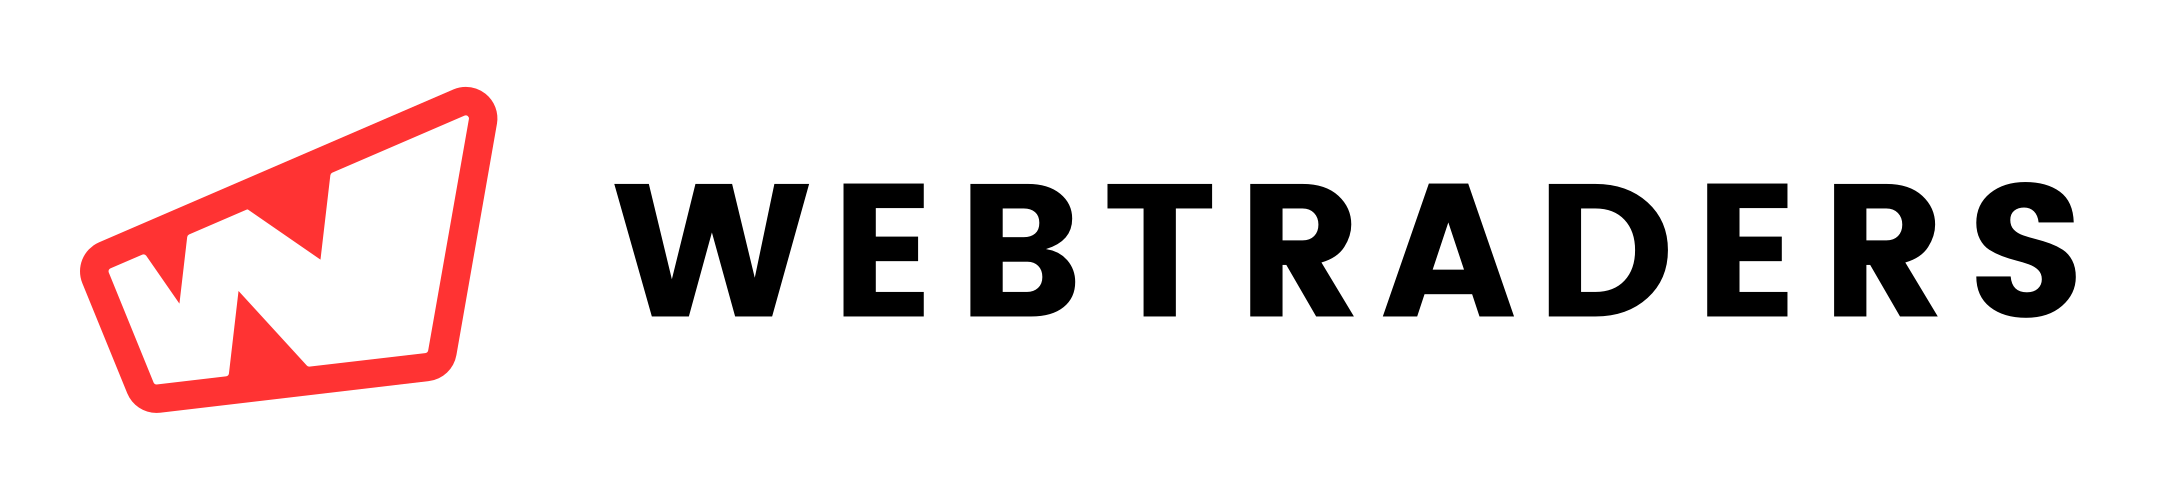 Logo Webtraders2017 Blackred